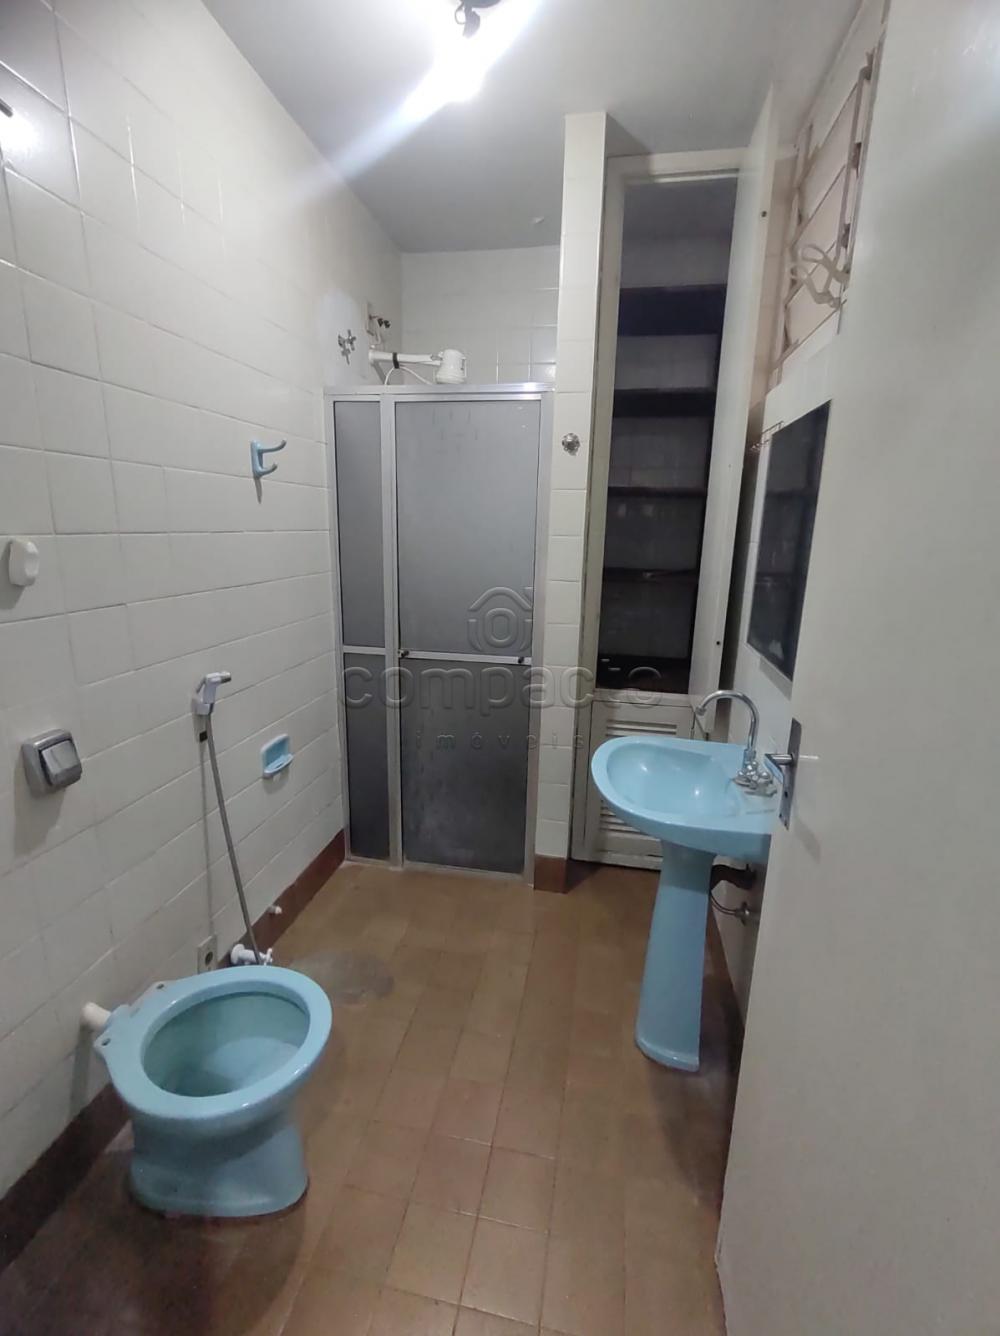 Alugar Apartamento / Padrão em São José do Rio Preto R$ 900,00 - Foto 6